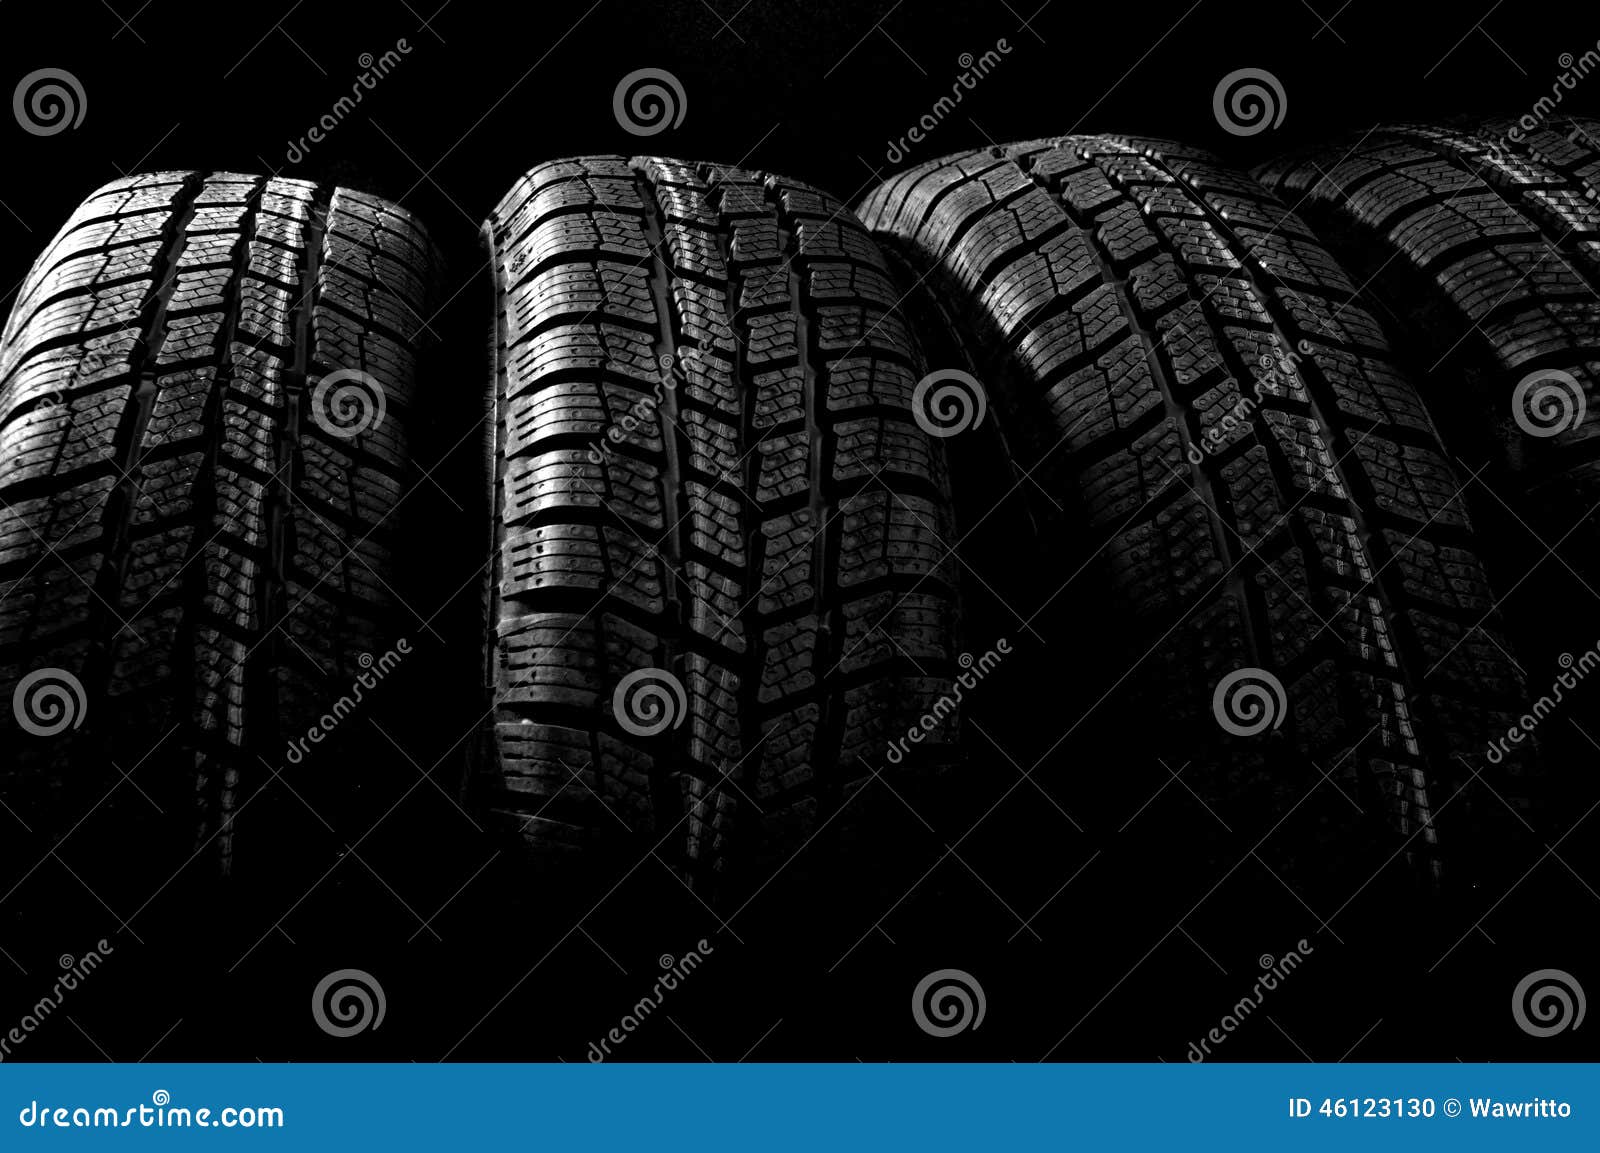 dark background with winter tires